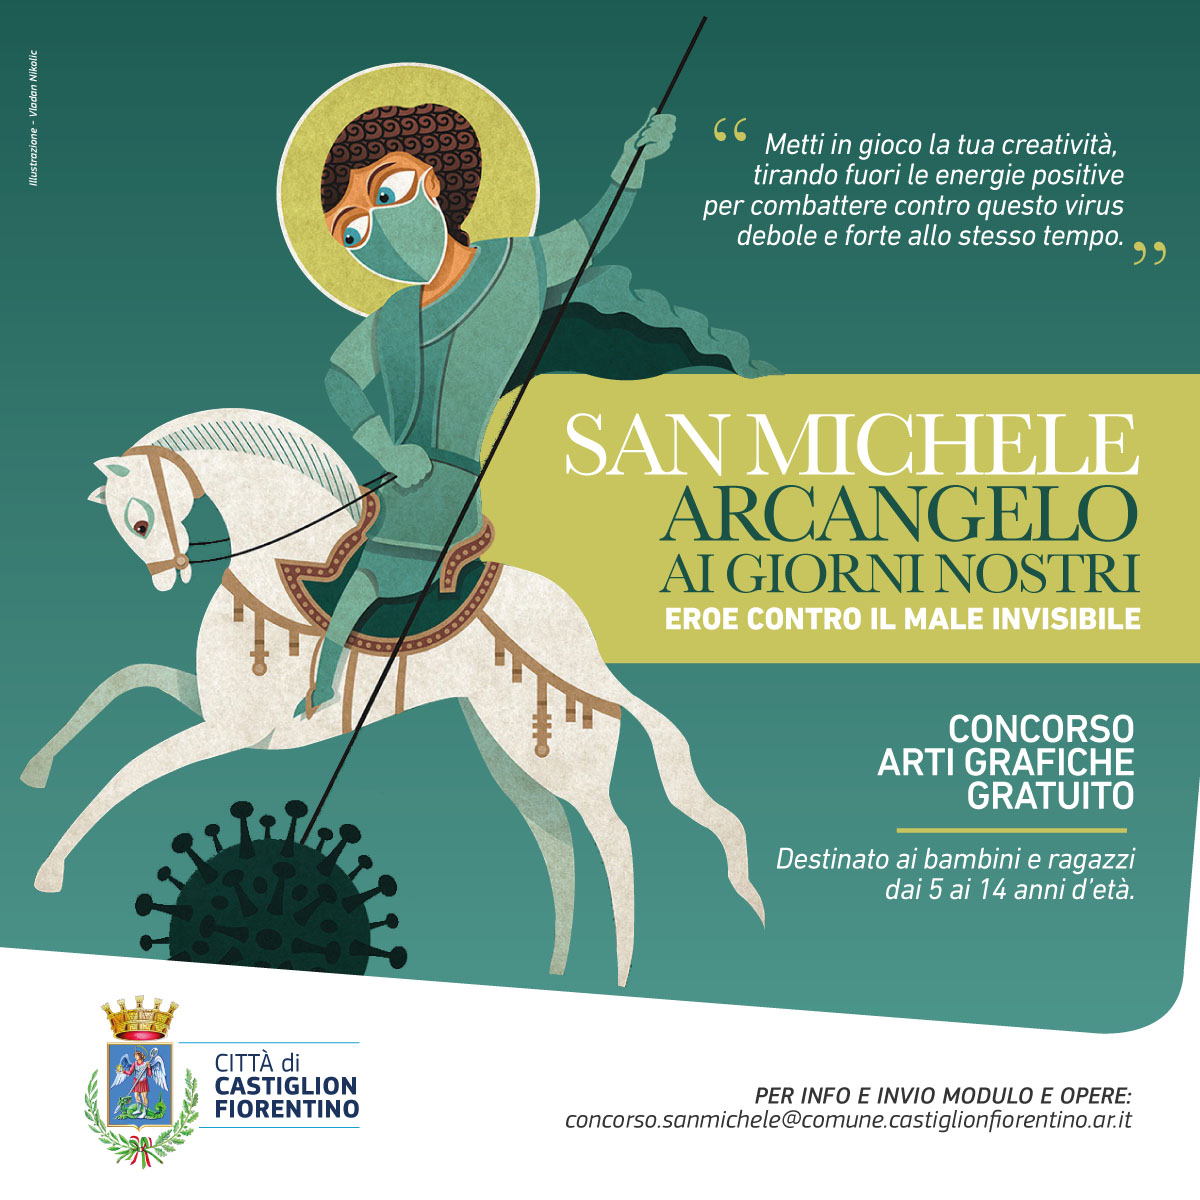 Castiglion Fiorentino, “San Michele Arcangelo ai giorni nostri”